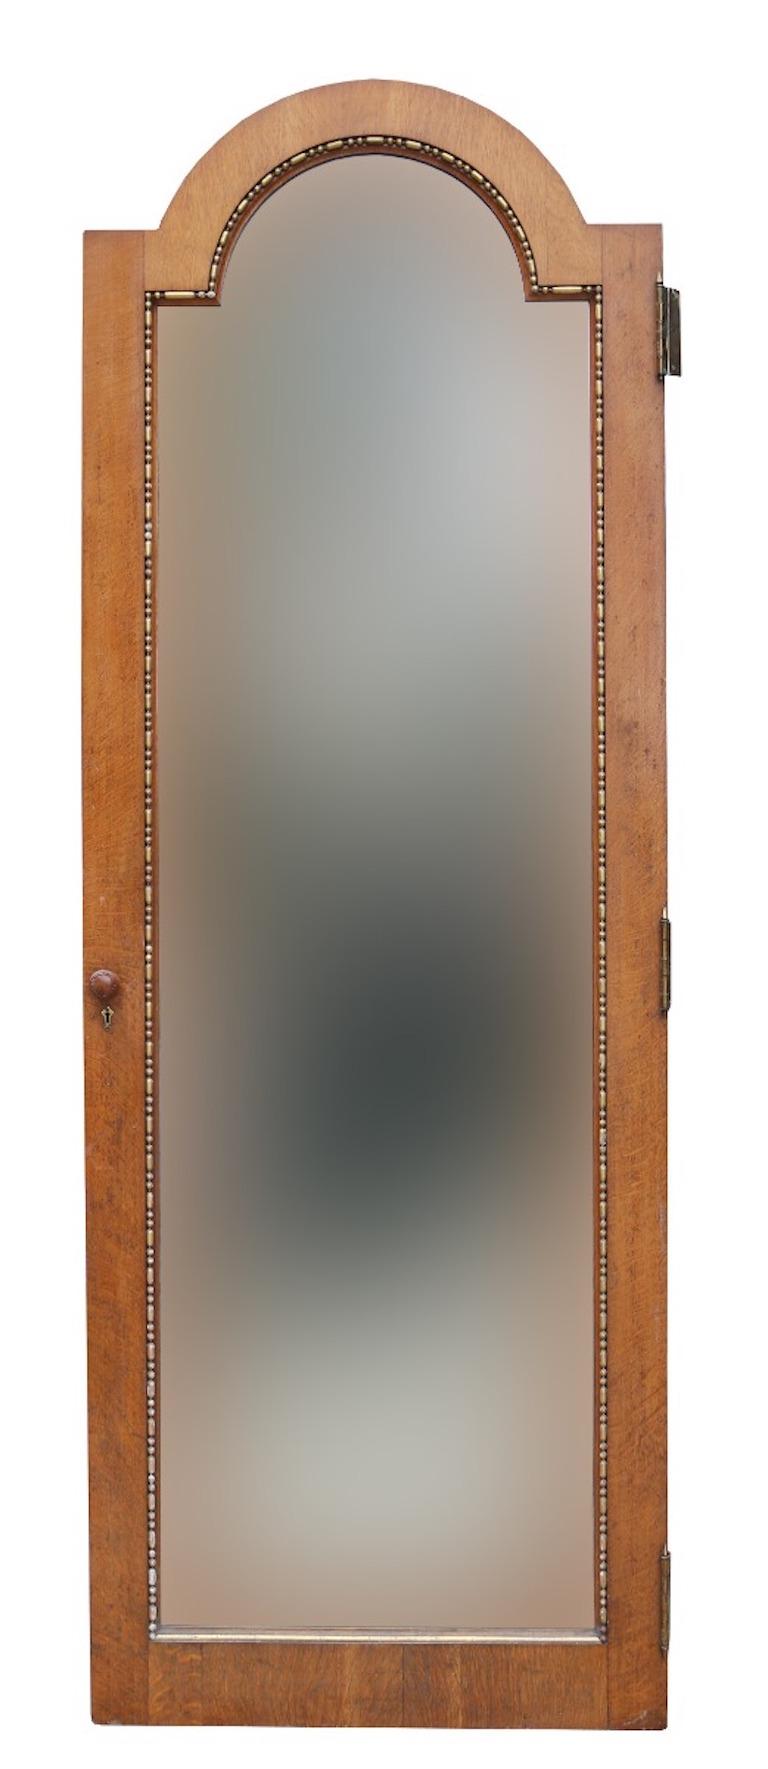 Une porte de bonne qualité avec une plaque de miroir d'origine et un dos à panneaux. La porte est décorée de perles et d'enroulements dorés, avec une serrure, une clé et des charnières.

Dimensions supplémentaires :

Hauteur (épaule) 197,5 cm.